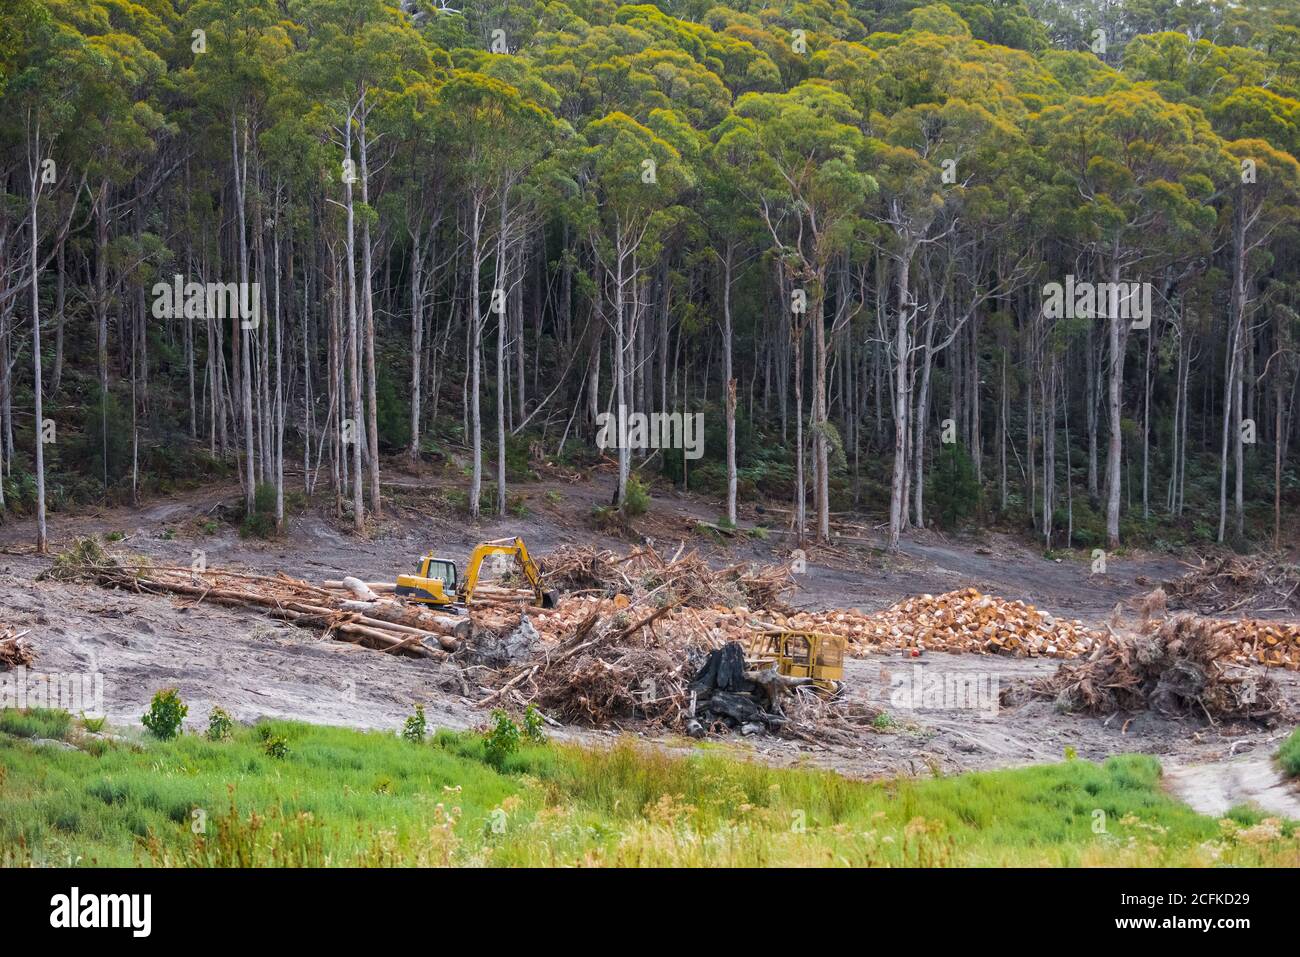 Déforestation au nord de Cygnet dans la région de Huon Valley en Tasmanie, en Australie, un État dont le slogan de voyage était « l'État naturel ». Banque D'Images